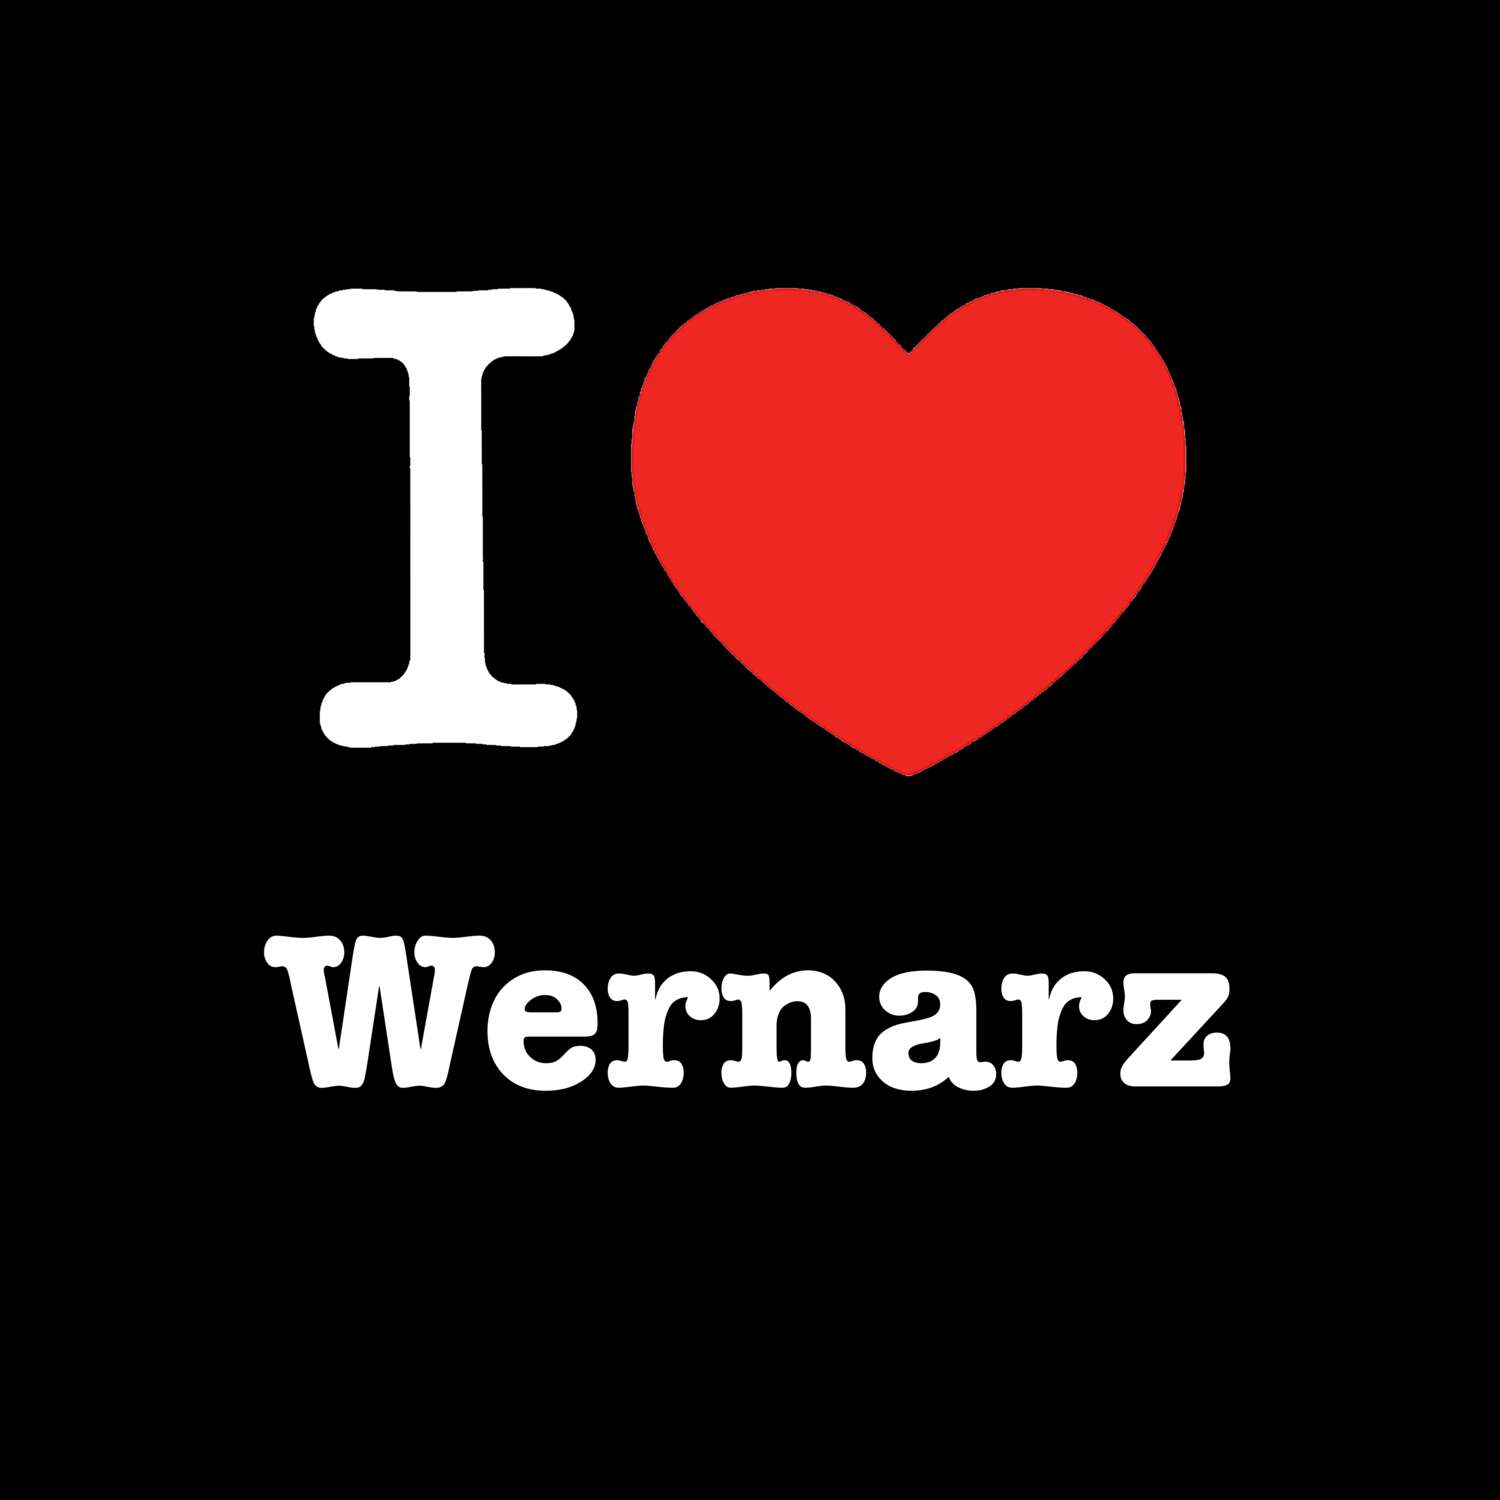 Wernarz T-Shirt »I love«